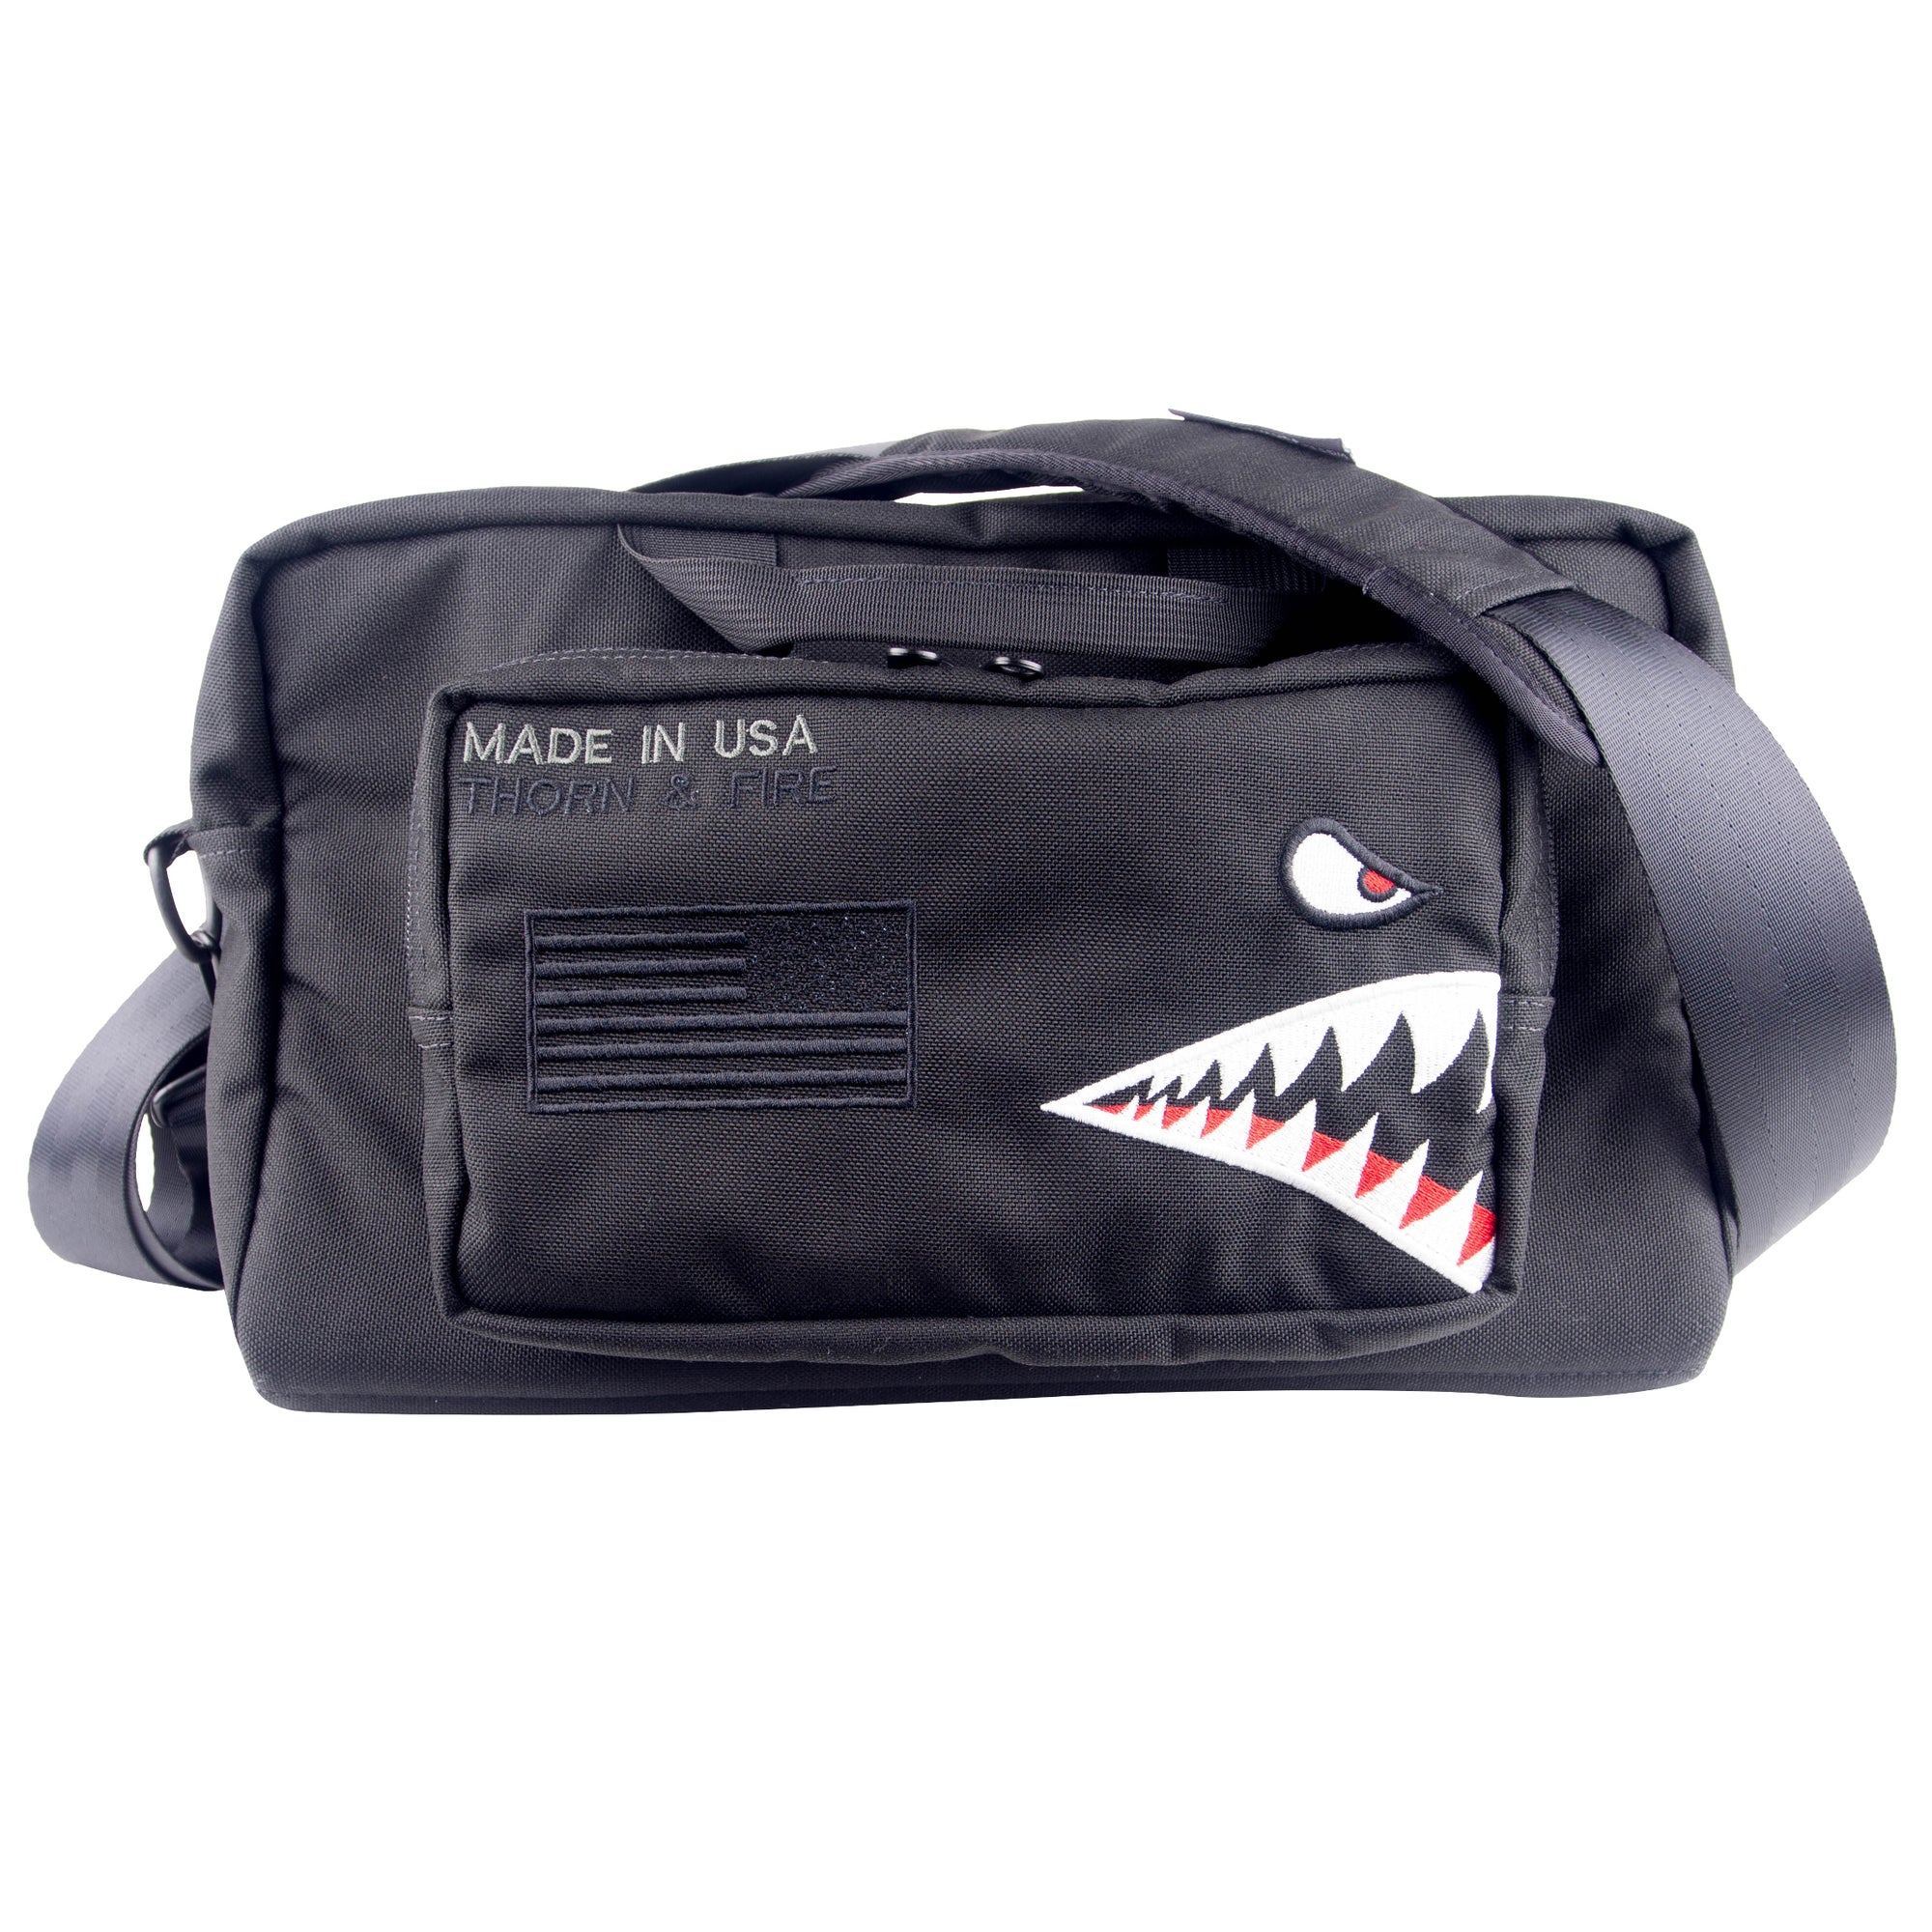 BAPE Tiger Shark Boston Bag Black - SS18 - US